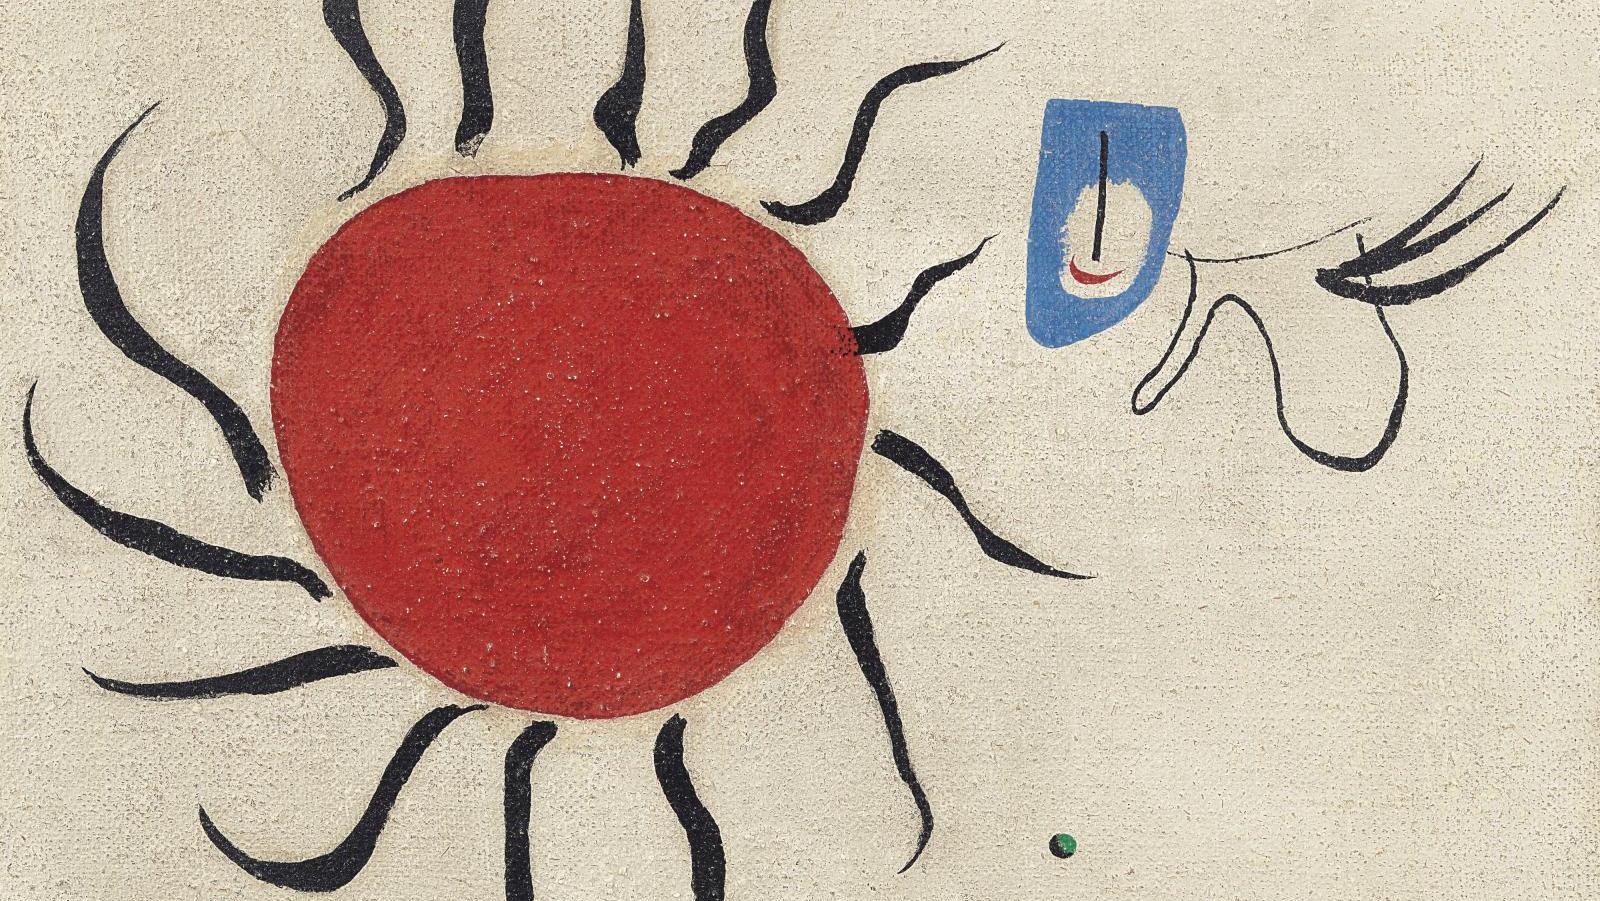 Joan Miró, Peinture (Le Soleil), 1927, huile sur toile, 38,3 x 46,2 cm. Courtoisie... Miró, la fabrique de l’artiste à Bilbao